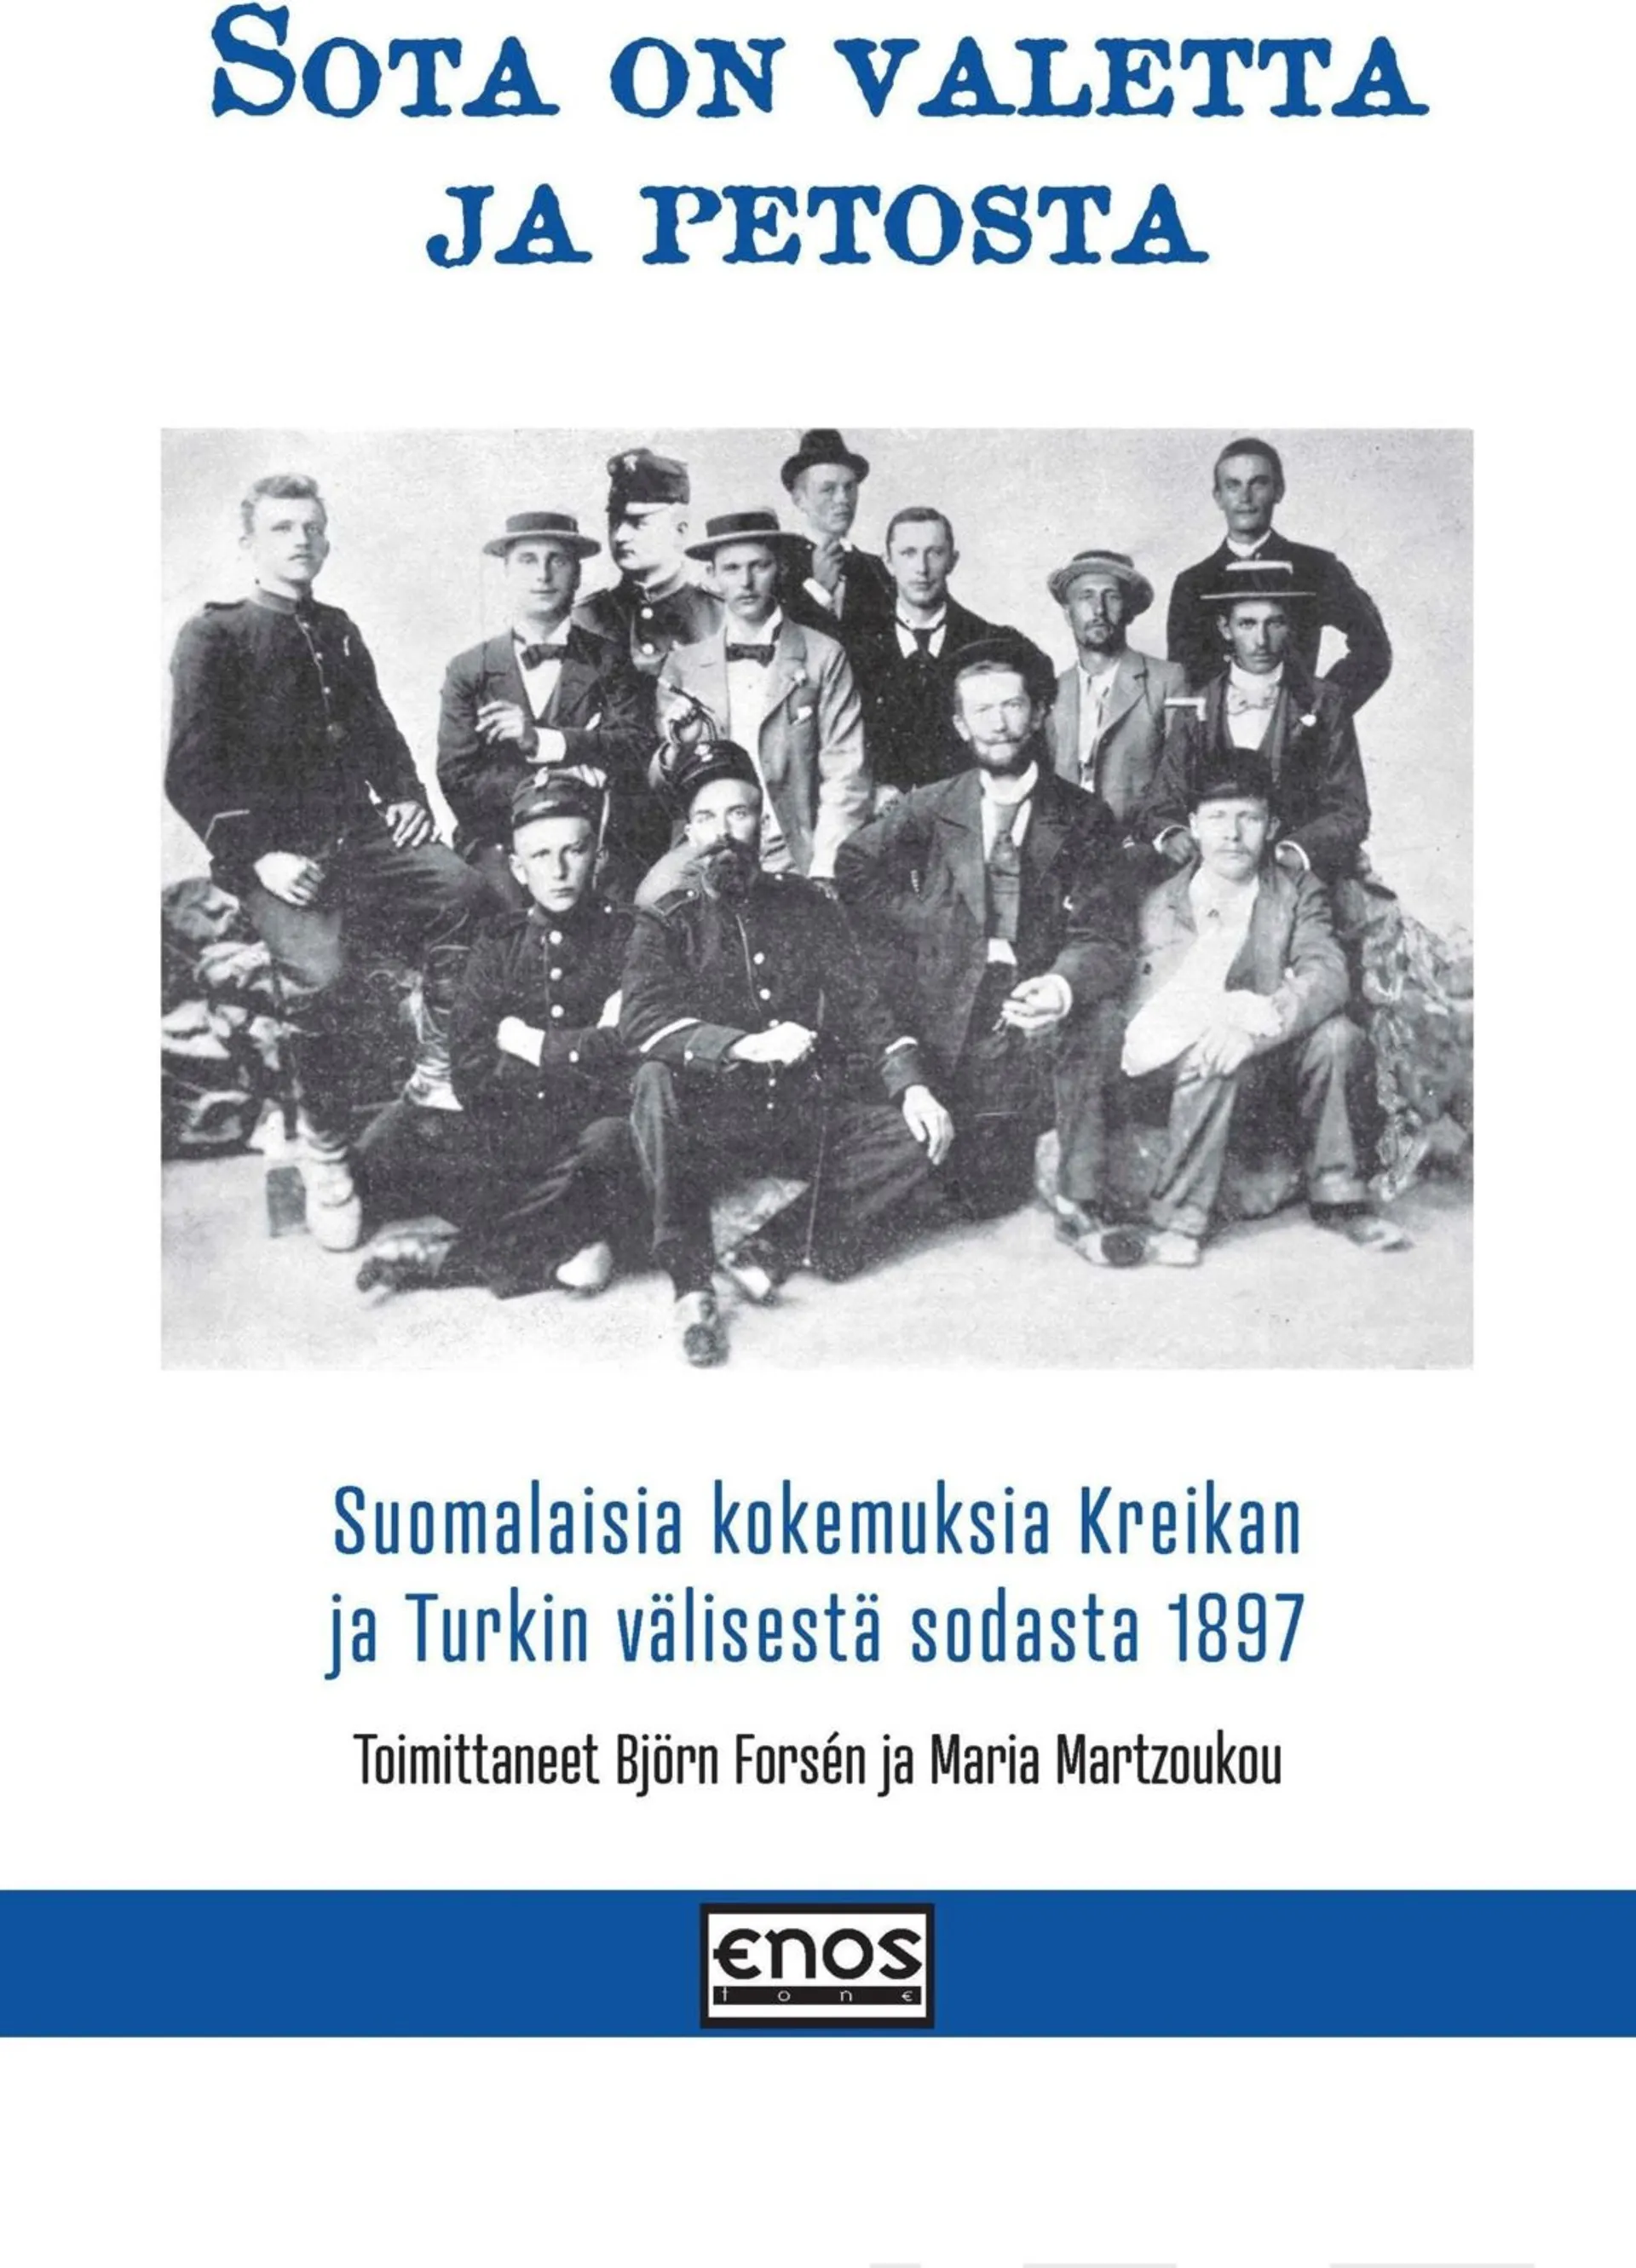 Sota on valetta ja petosta - Suomalaisia kokemuksia Kreikan ja Turkin välisestä sodasta vuonna 1897